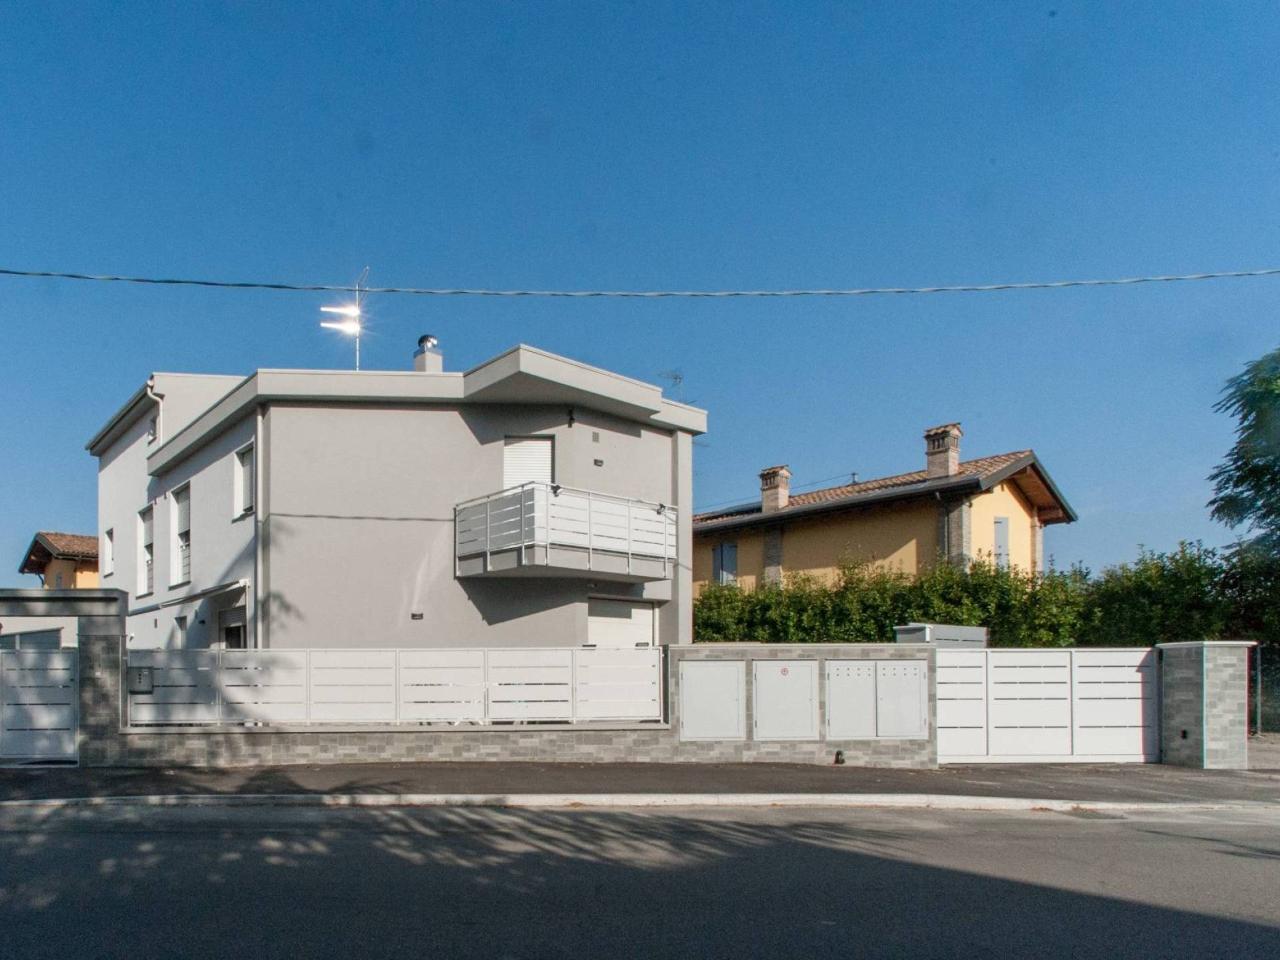 Villa a schiera in vendita a Castelfranco Emilia